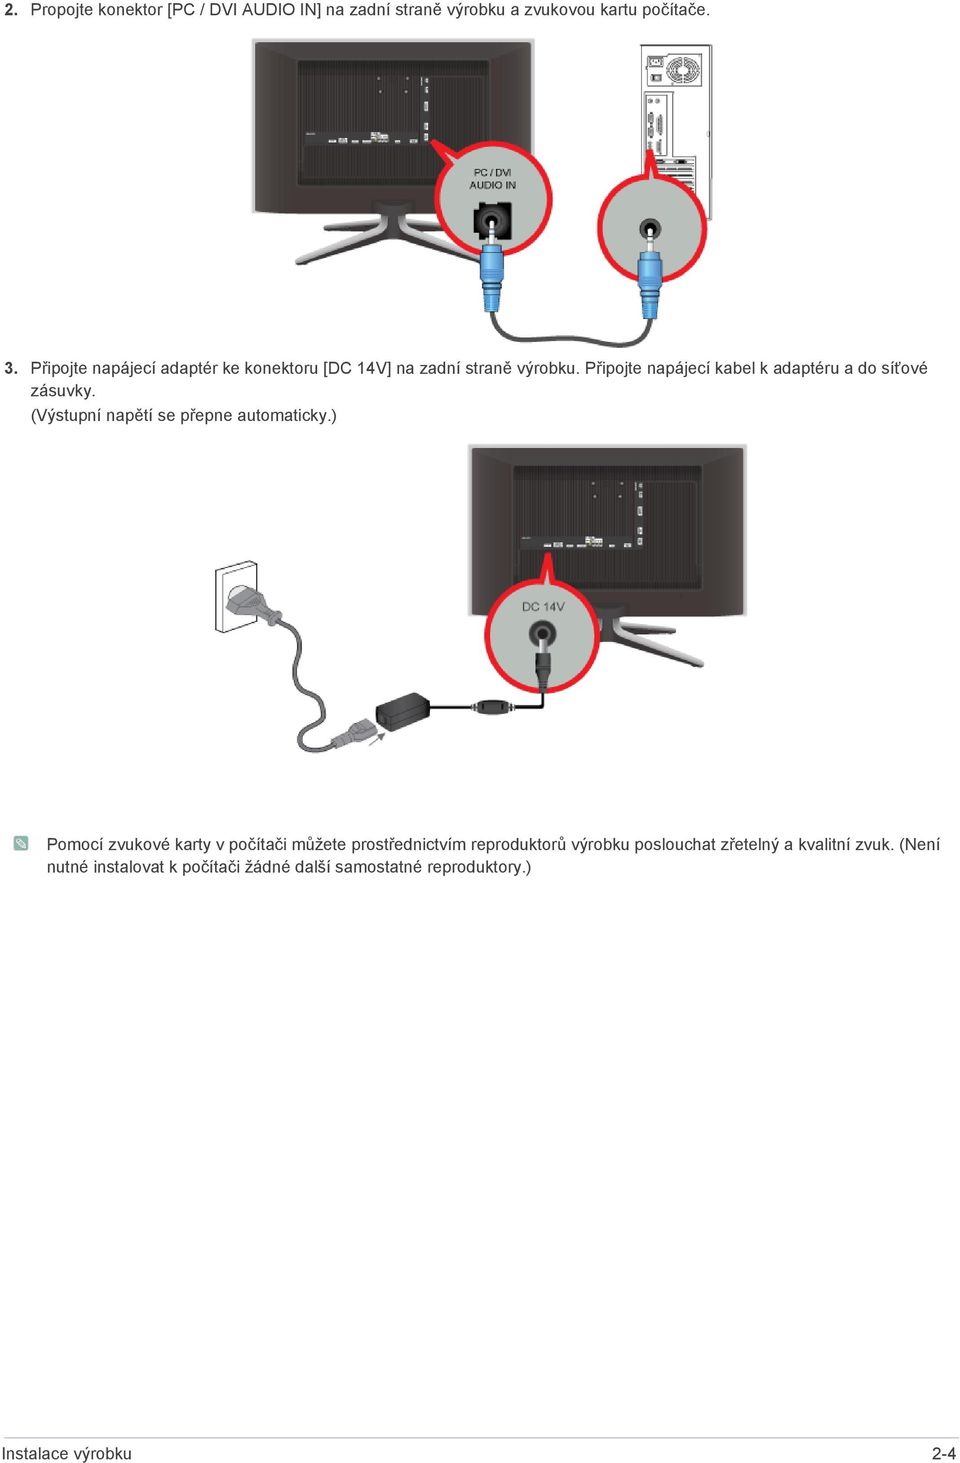 Připojte napájecí kabel k adaptéru a do síťové zásuvky. (Výstupní napětí se přepne automaticky.